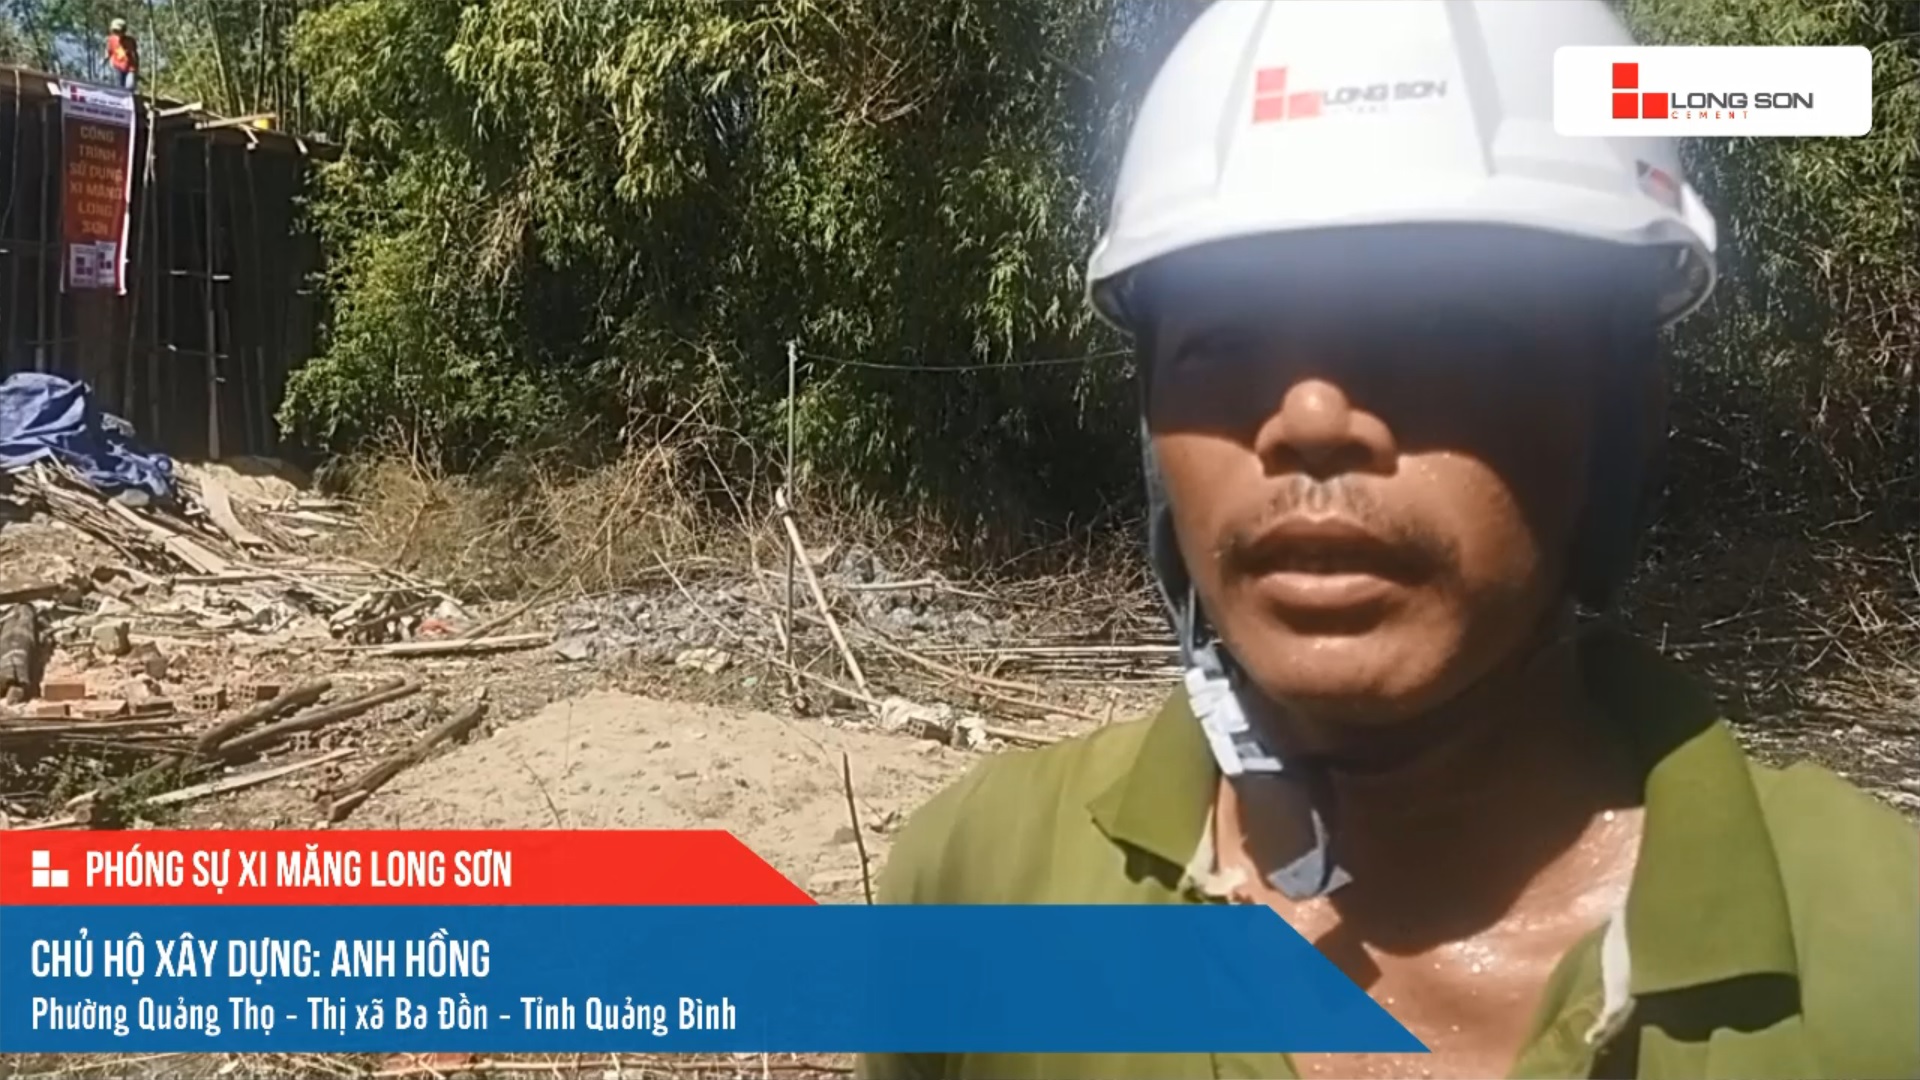 Phóng sự công trình sử dụng xi măng Long Sơn tại Quảng Bình ngày 11/07/2021